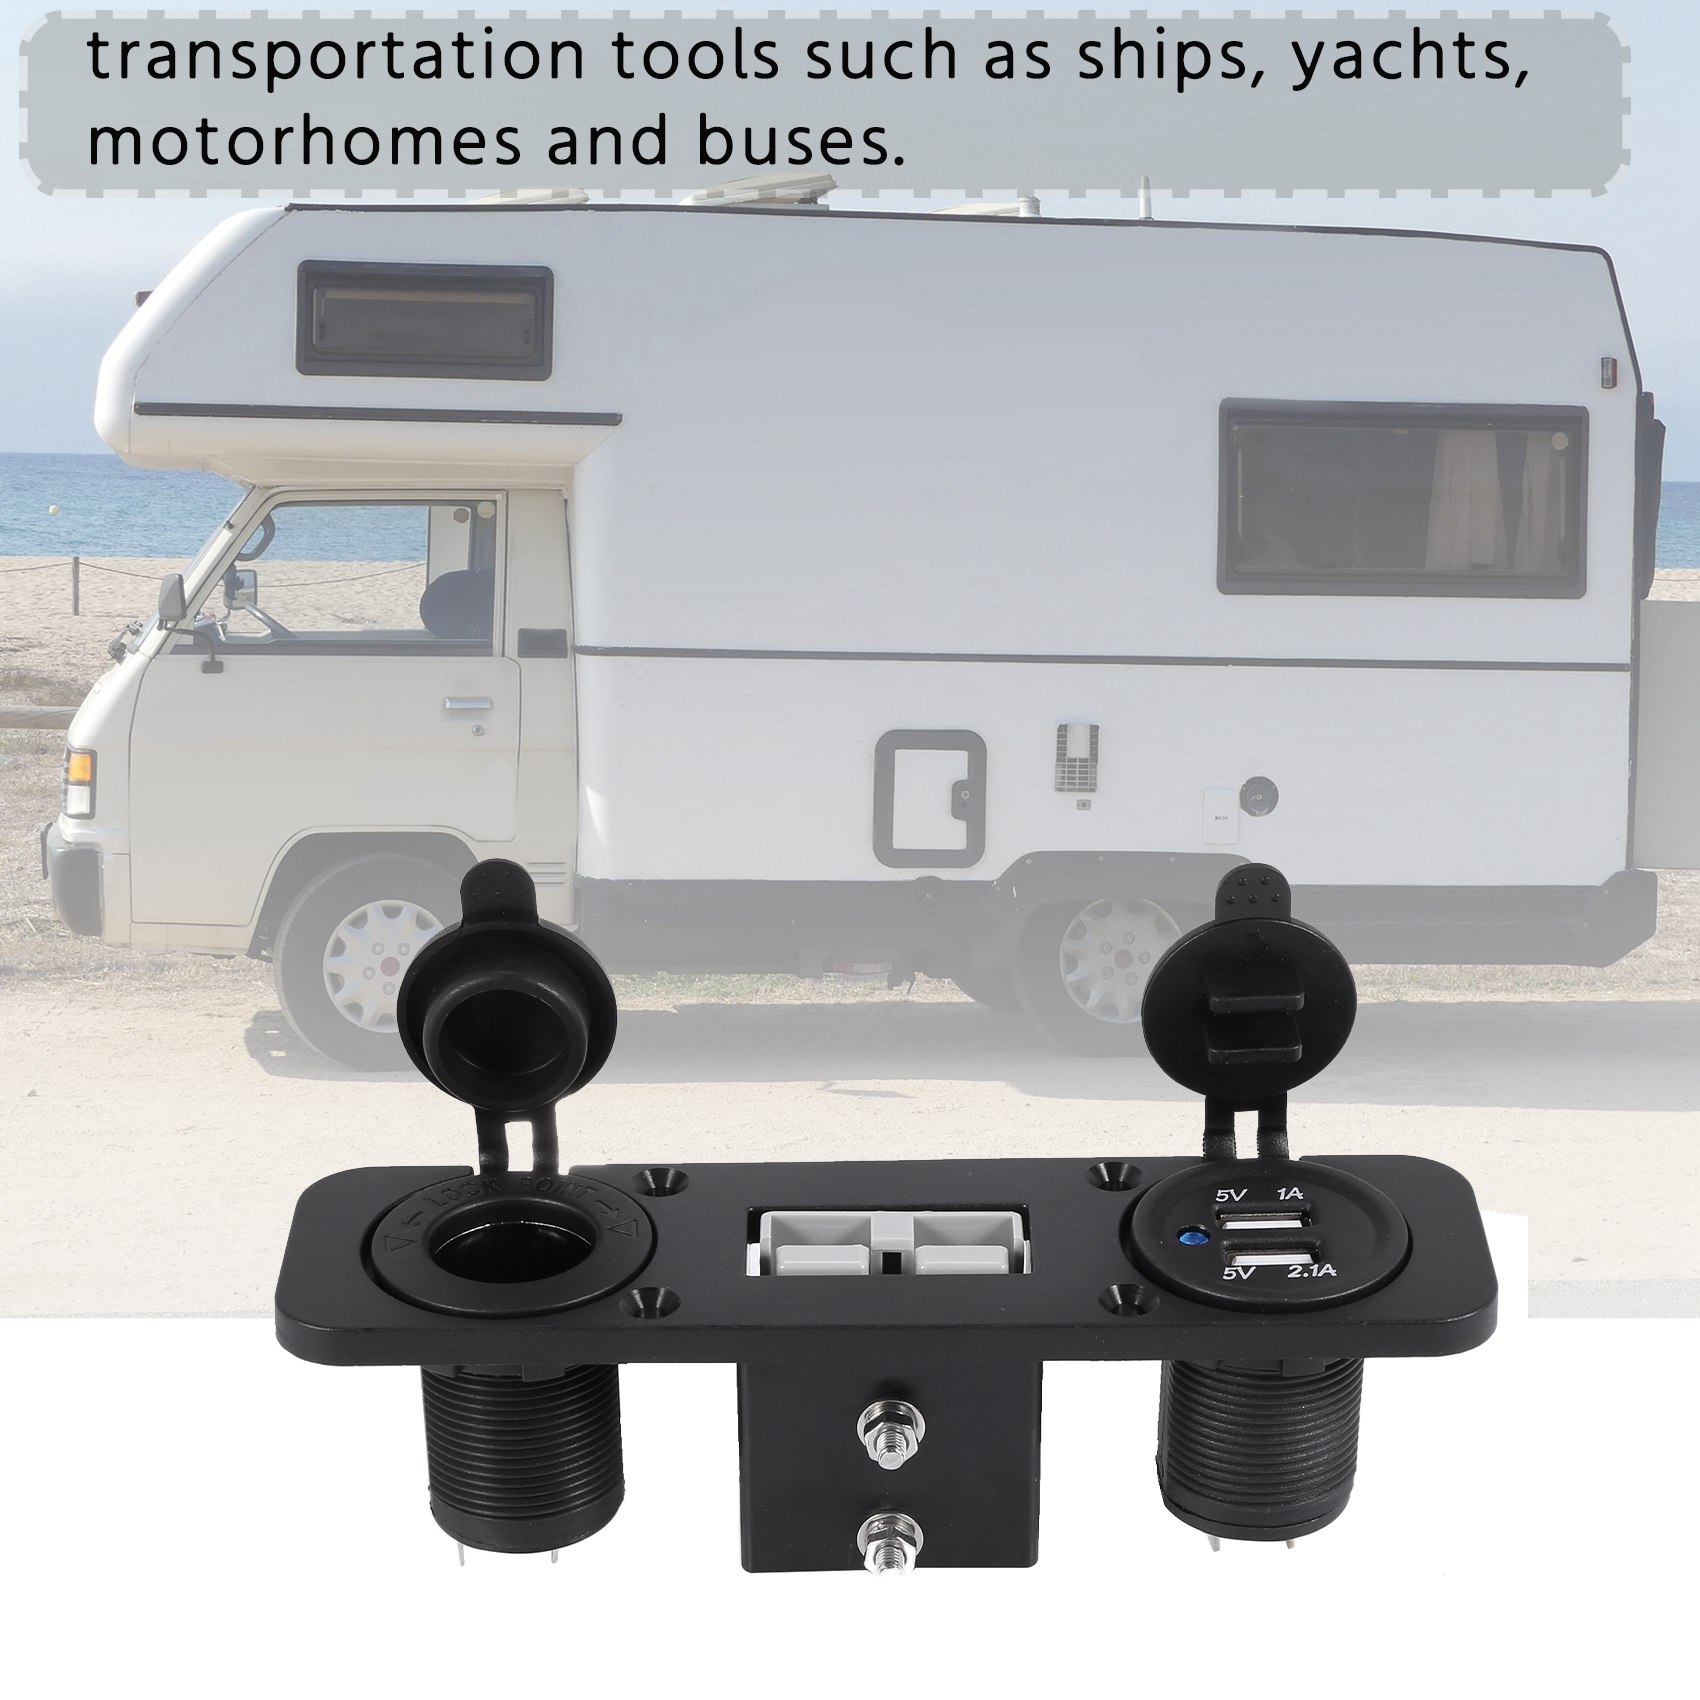 Flush mount anderson plug socket double usb charger socket panel for caravan camper boat truck